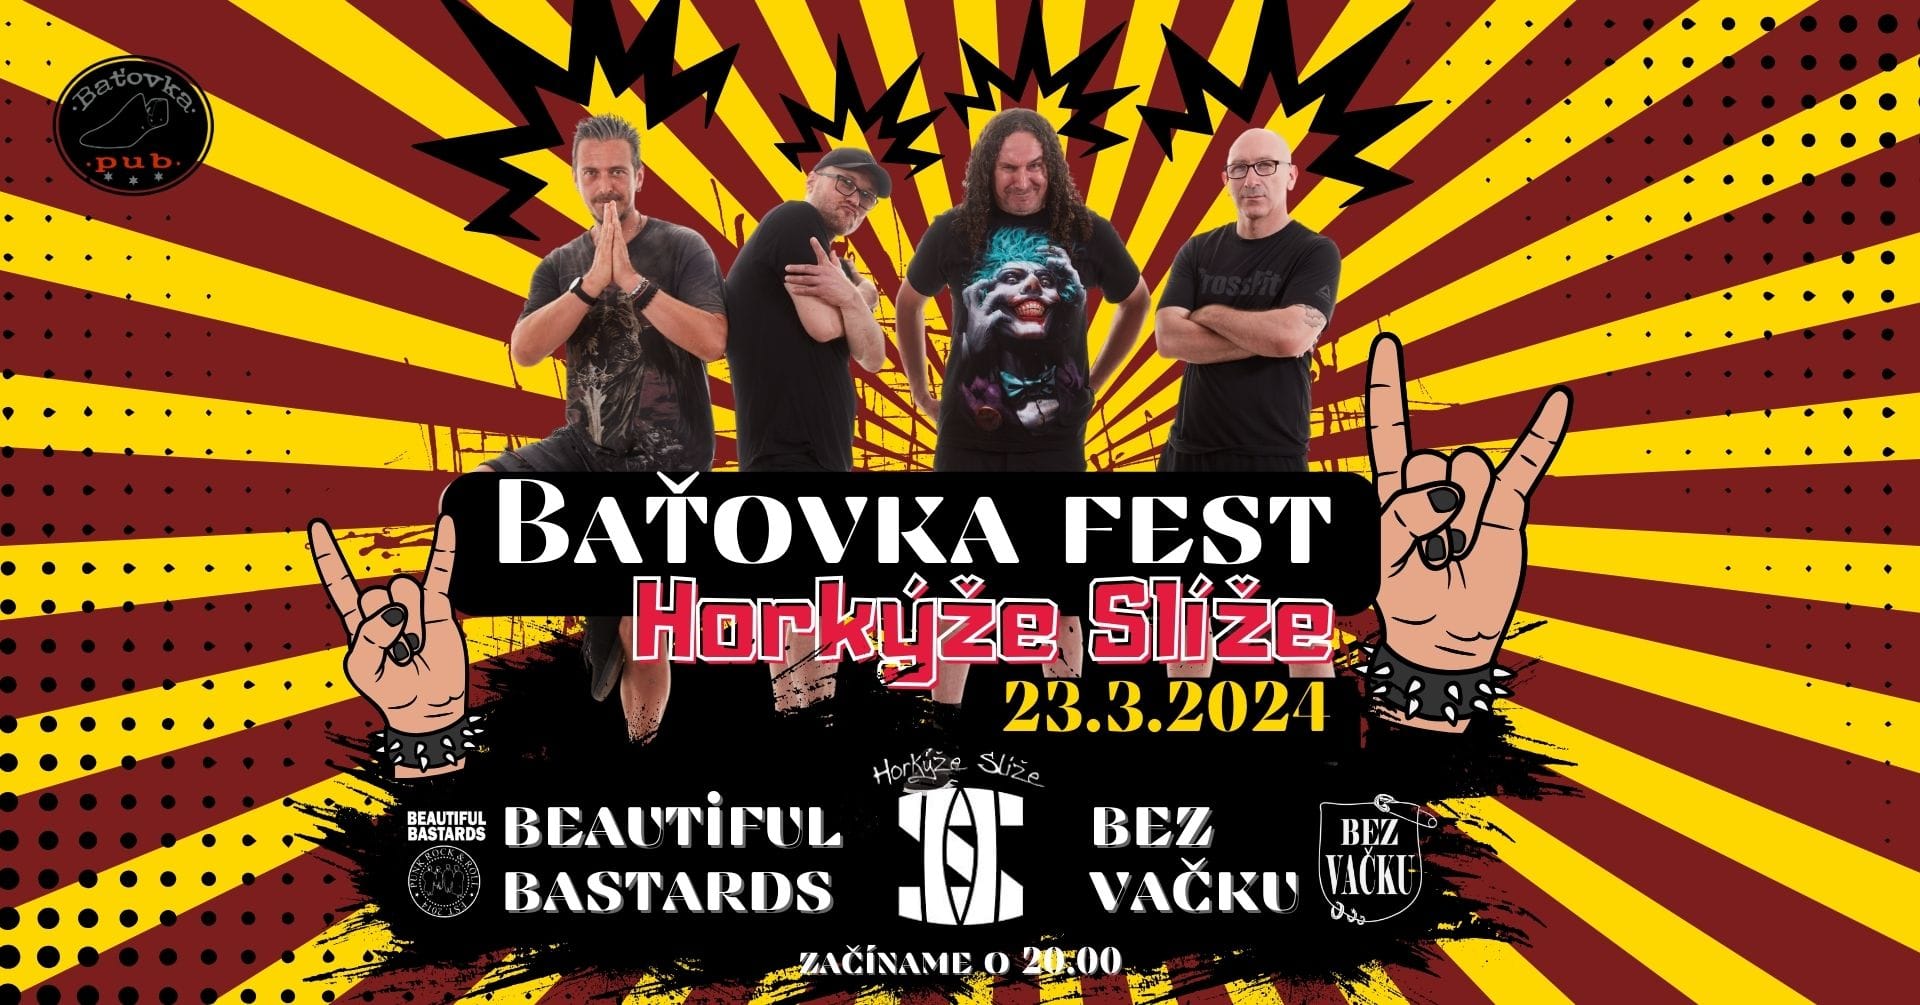 Baťovka fest - Horkýže slíže / Bautiful Bastards / Bez Vačku @ FABRIKA Industriálna eventová Hala